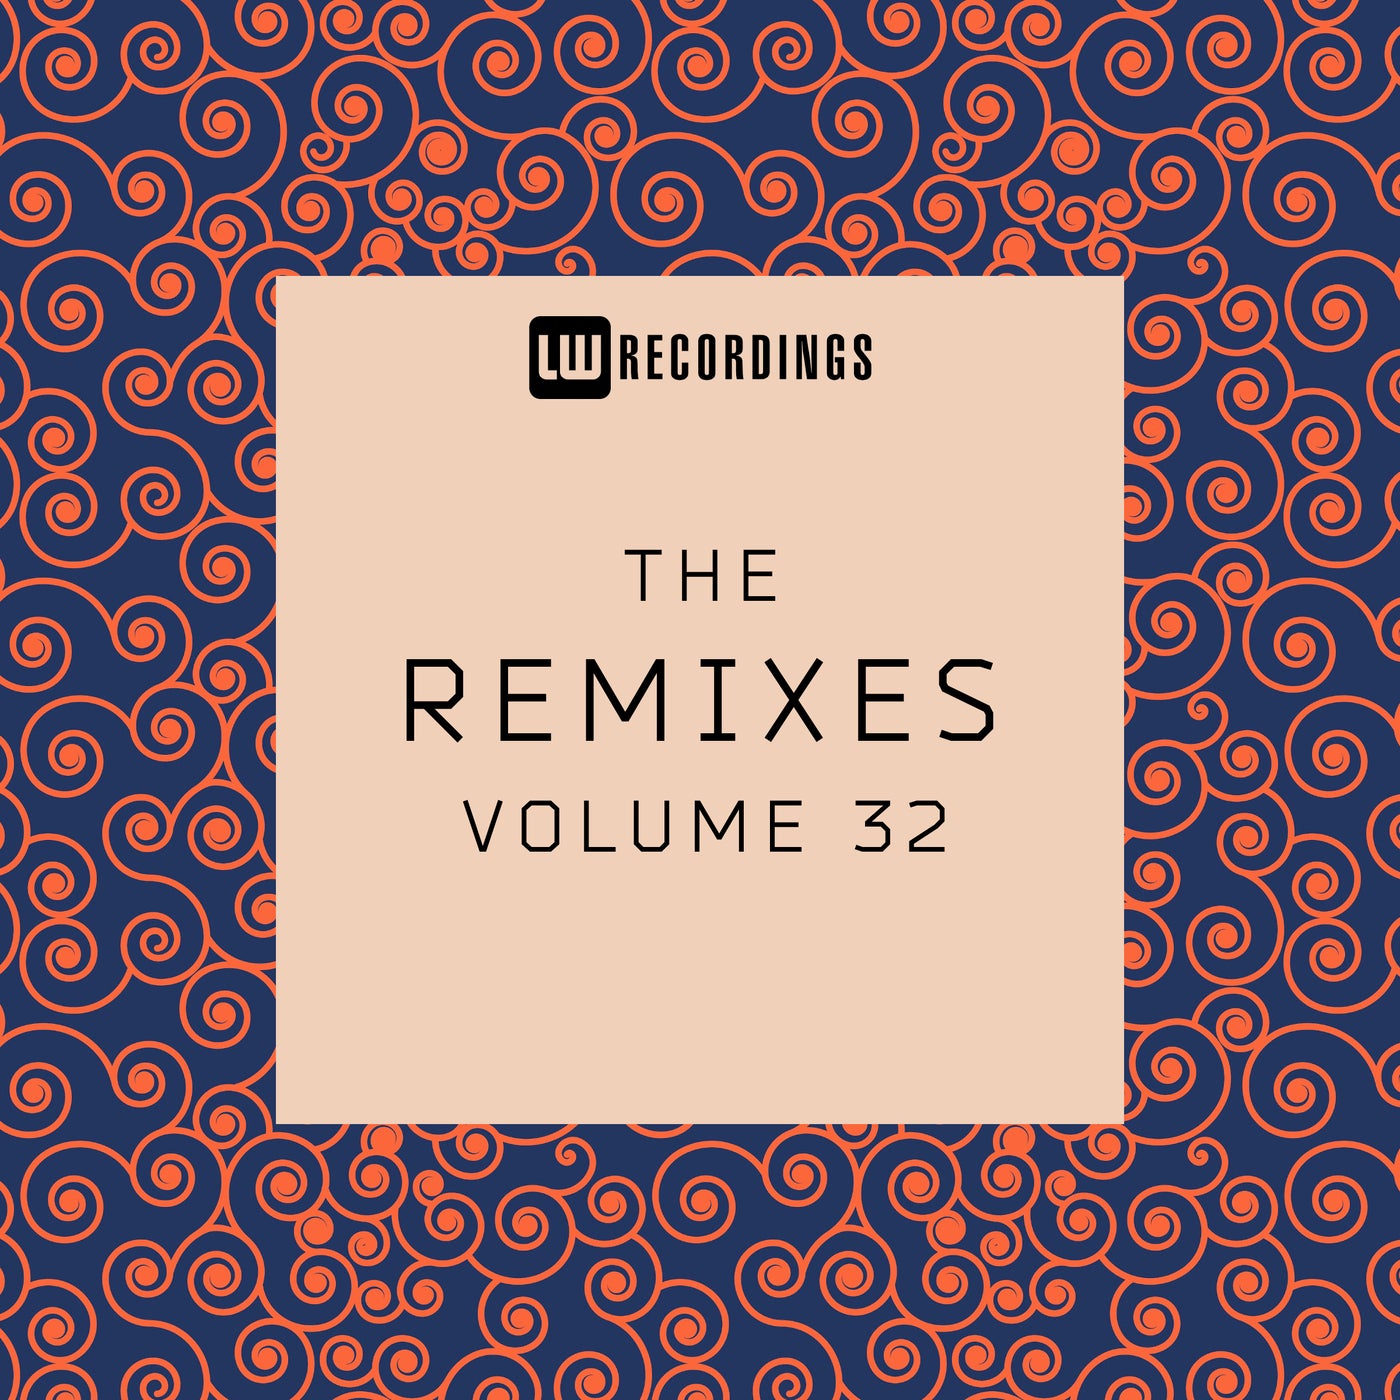 The Remixes, Vol. 32